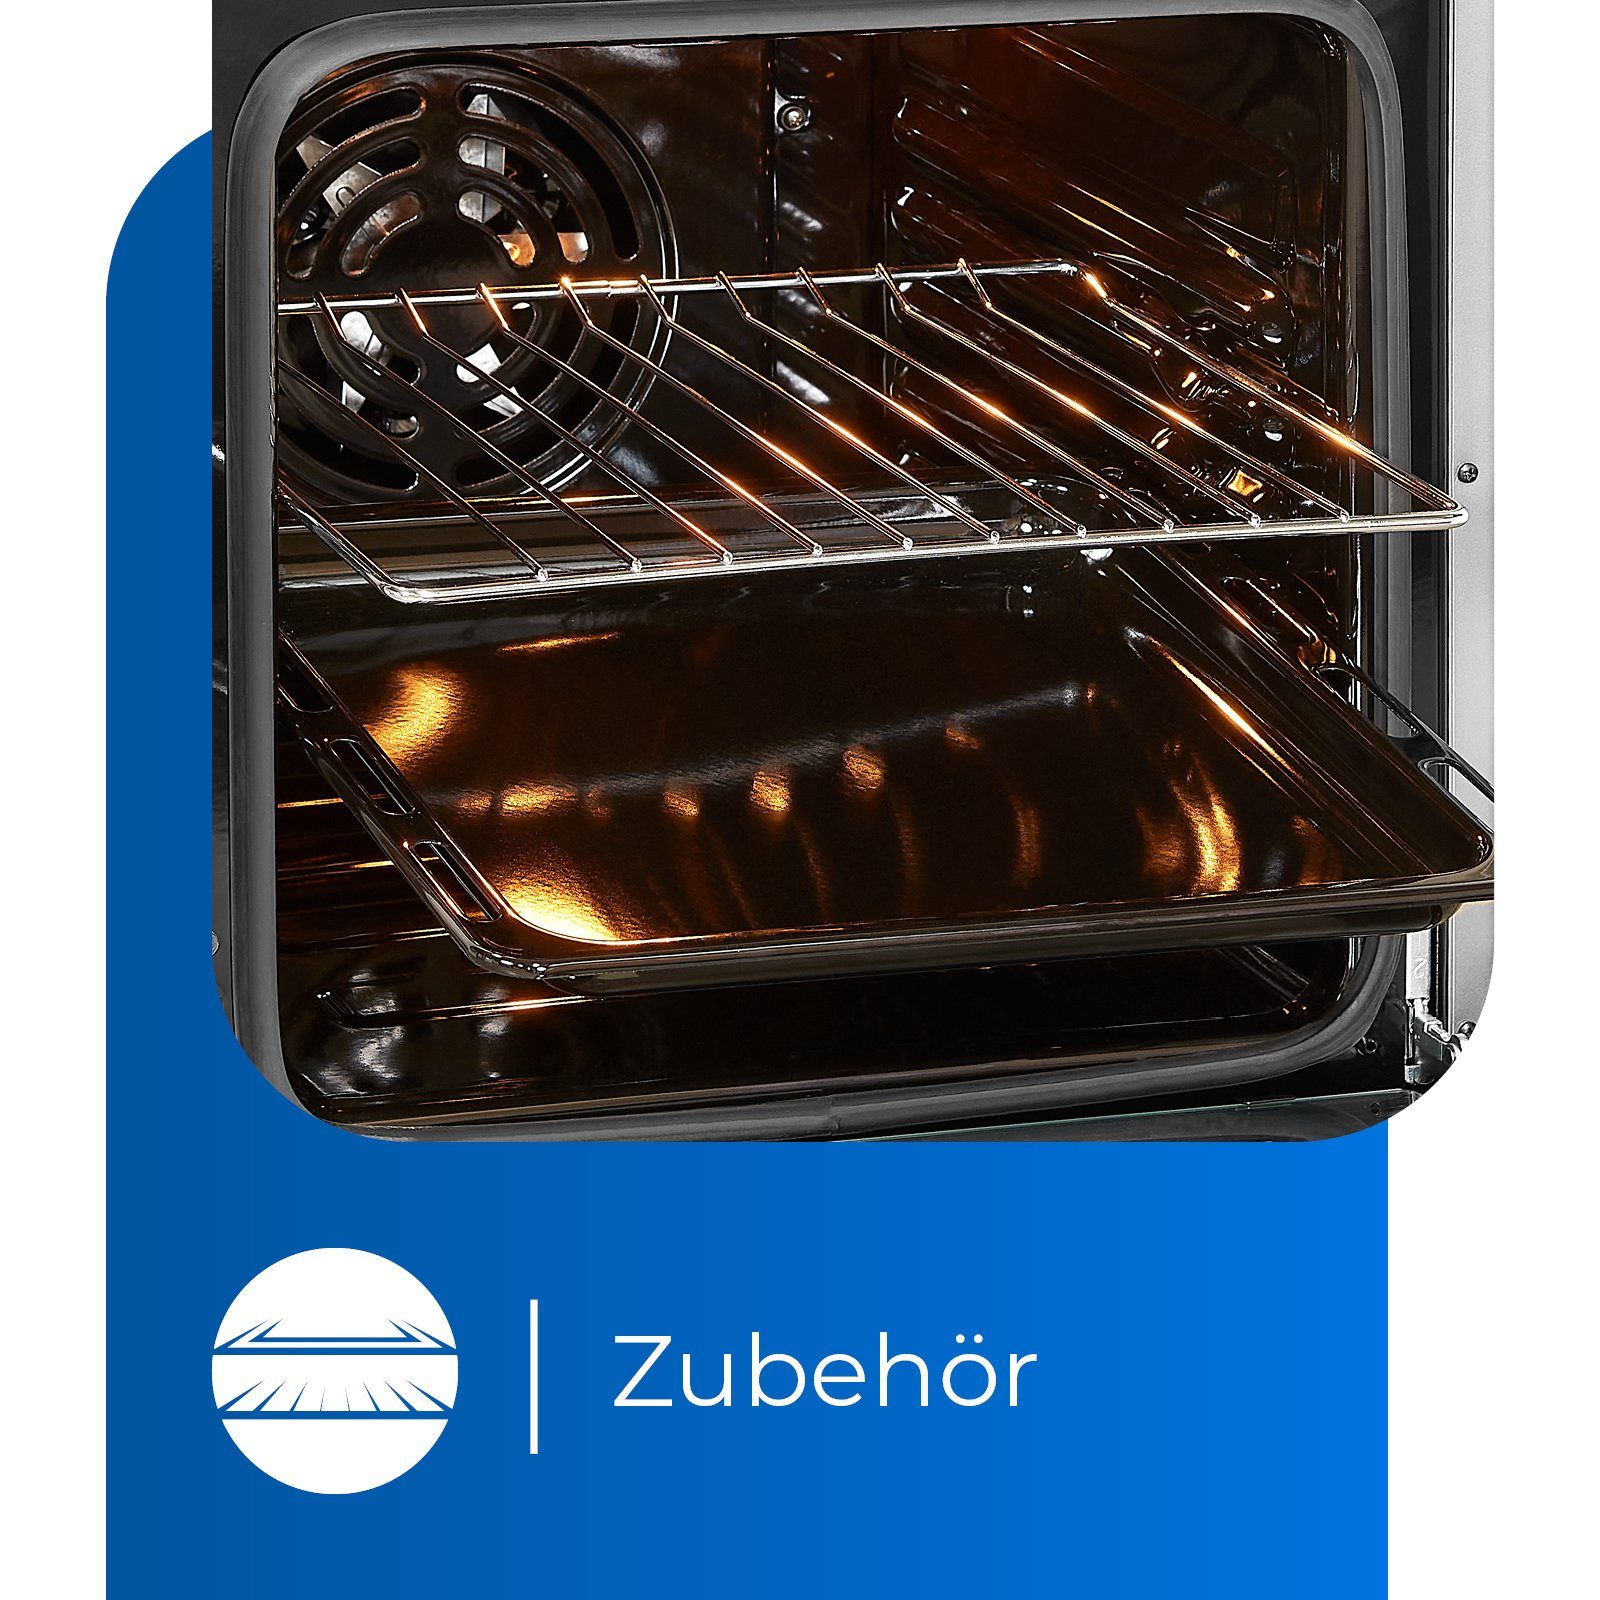 Umluft, ideal 5-4 2-Kreisbräter Grill, Inox Bräterzone ECM BZ, Kochen für & exquisit flexibles Elektro-Standherd